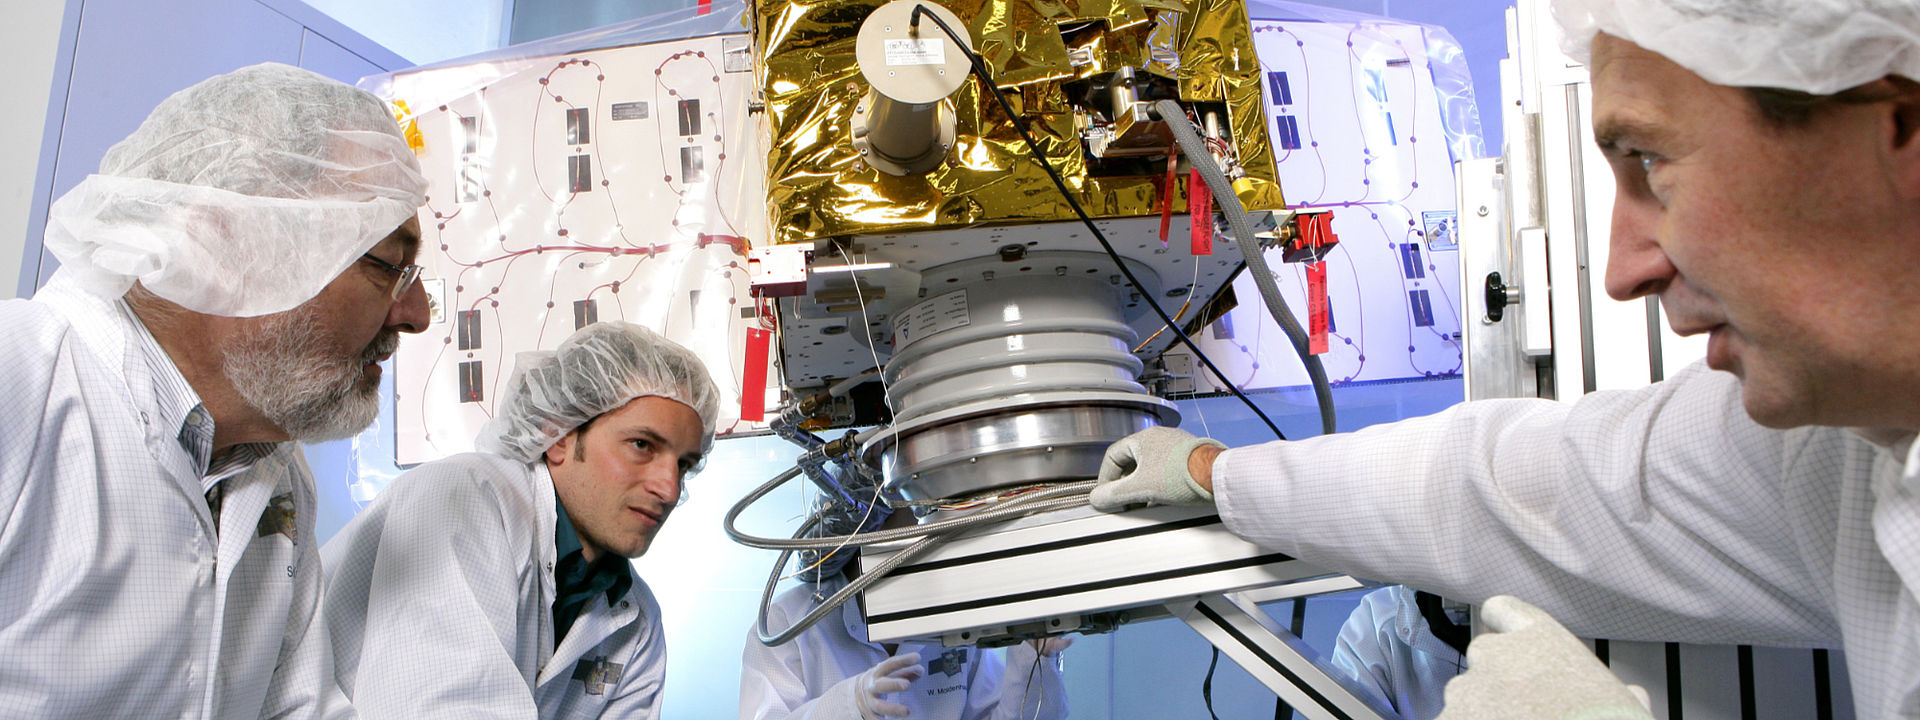 Zwei OHB-Mitarbeiter arbeiten im Reimraum an Satelliten